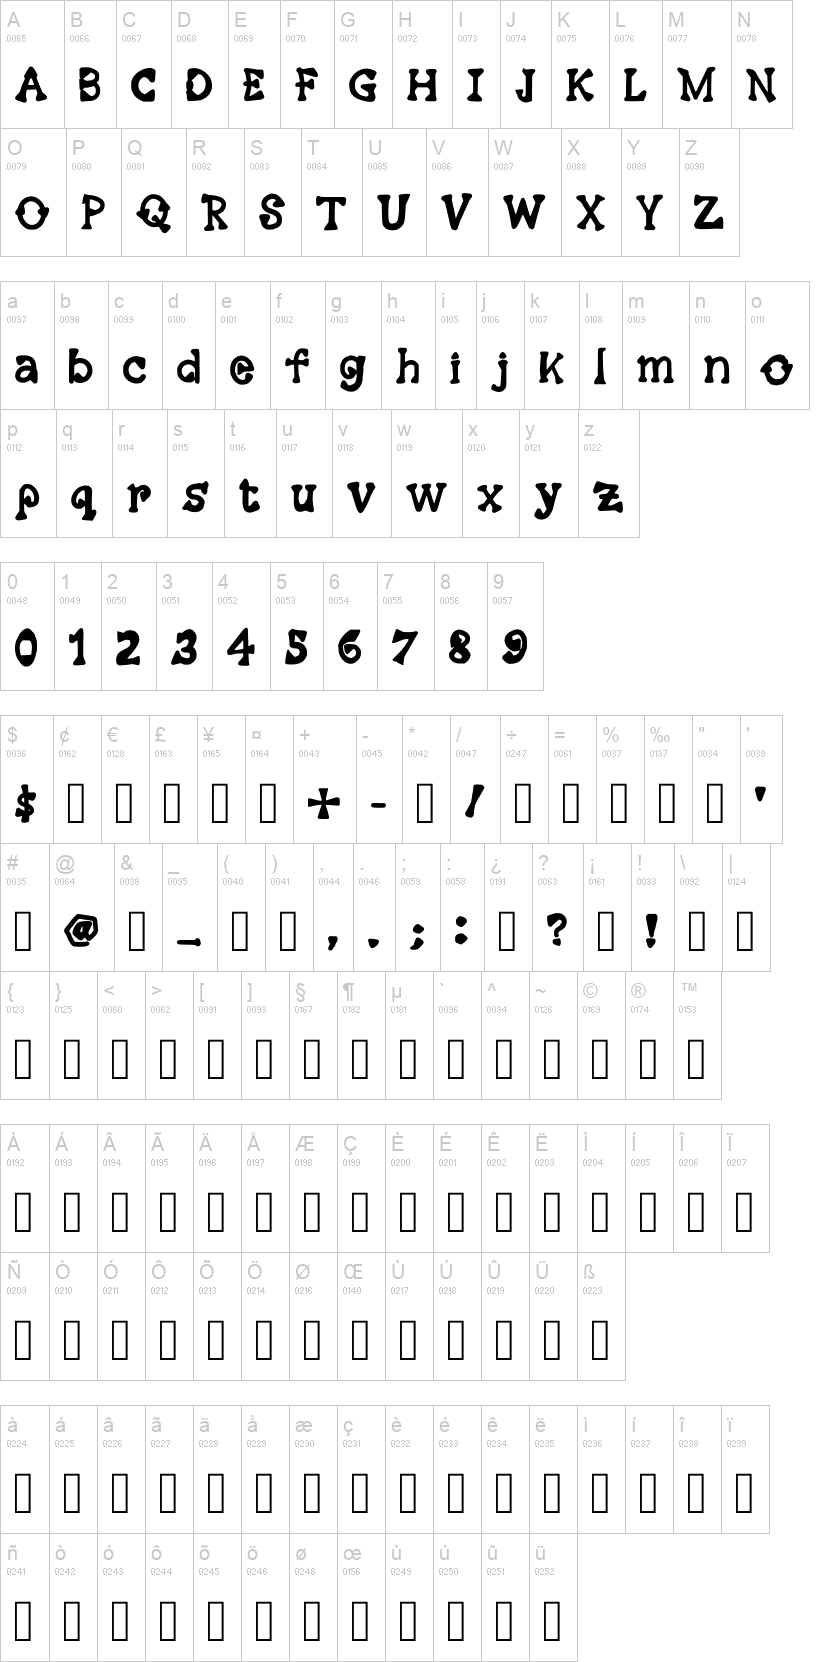 Mosaic Serif